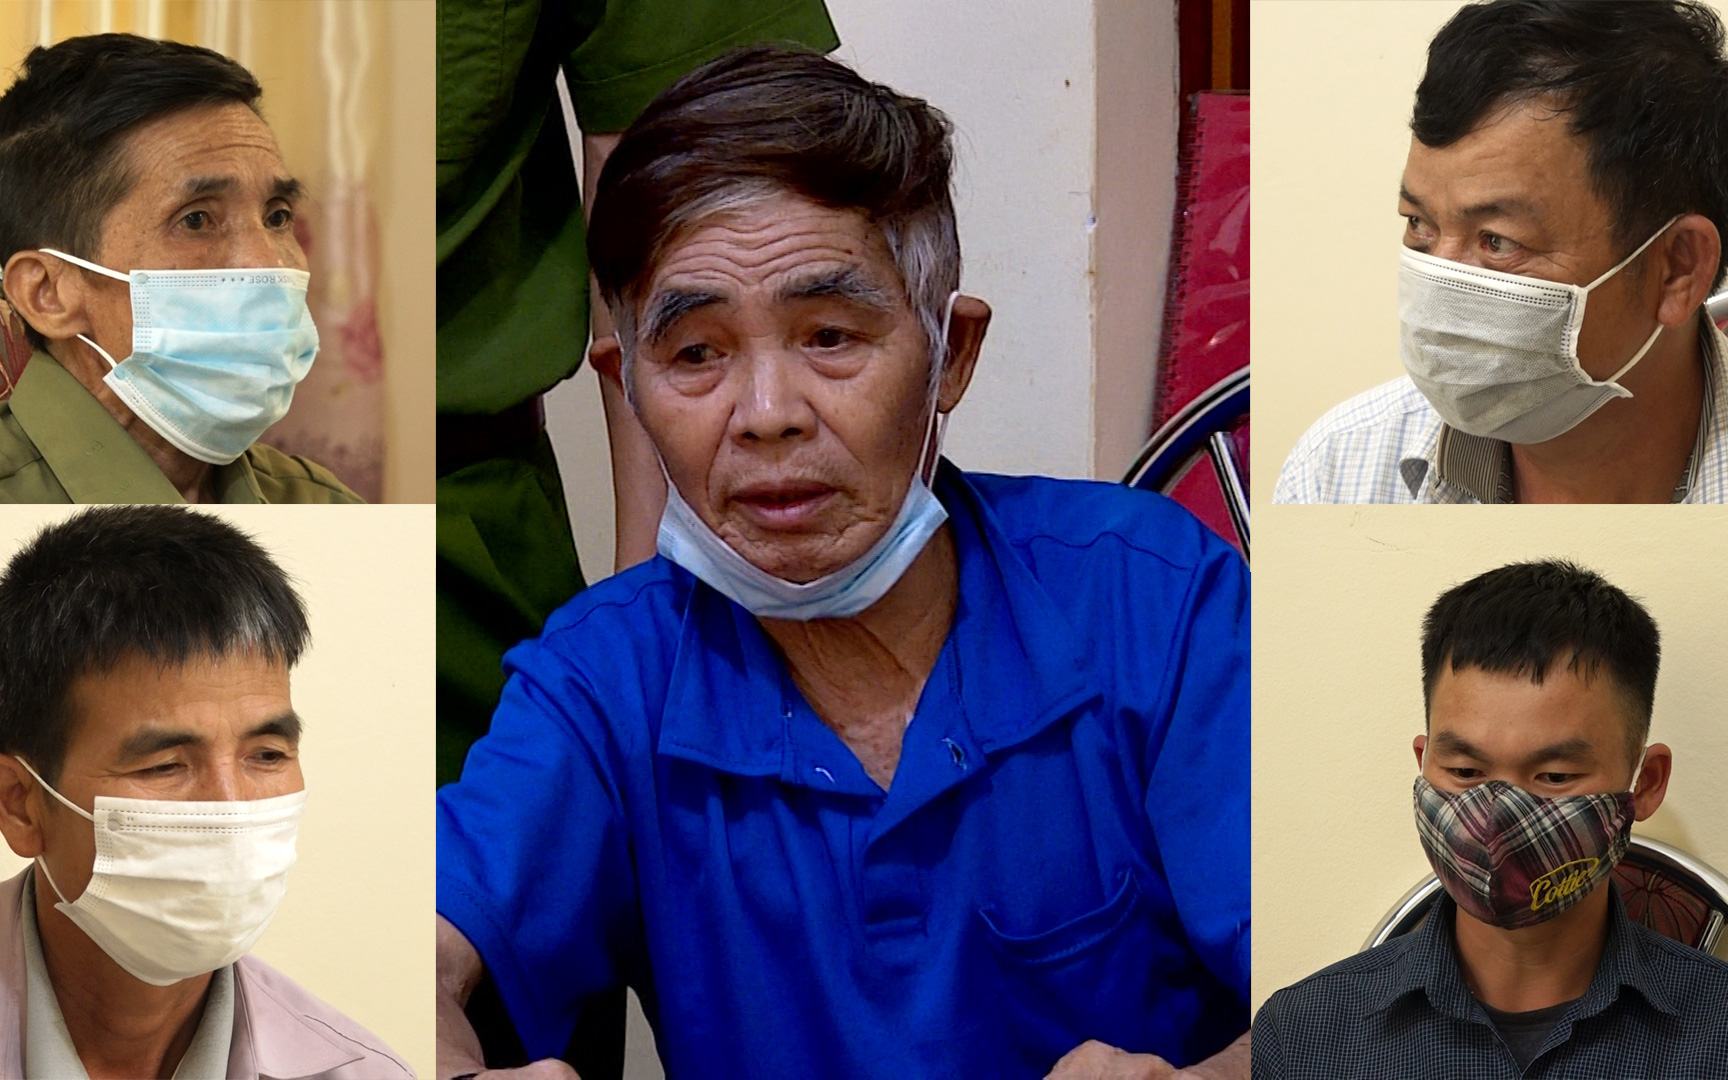 Sơn La: Khởi tố ông già 81 tuổi về tội bắt, giữ, giam người trái pháp luật